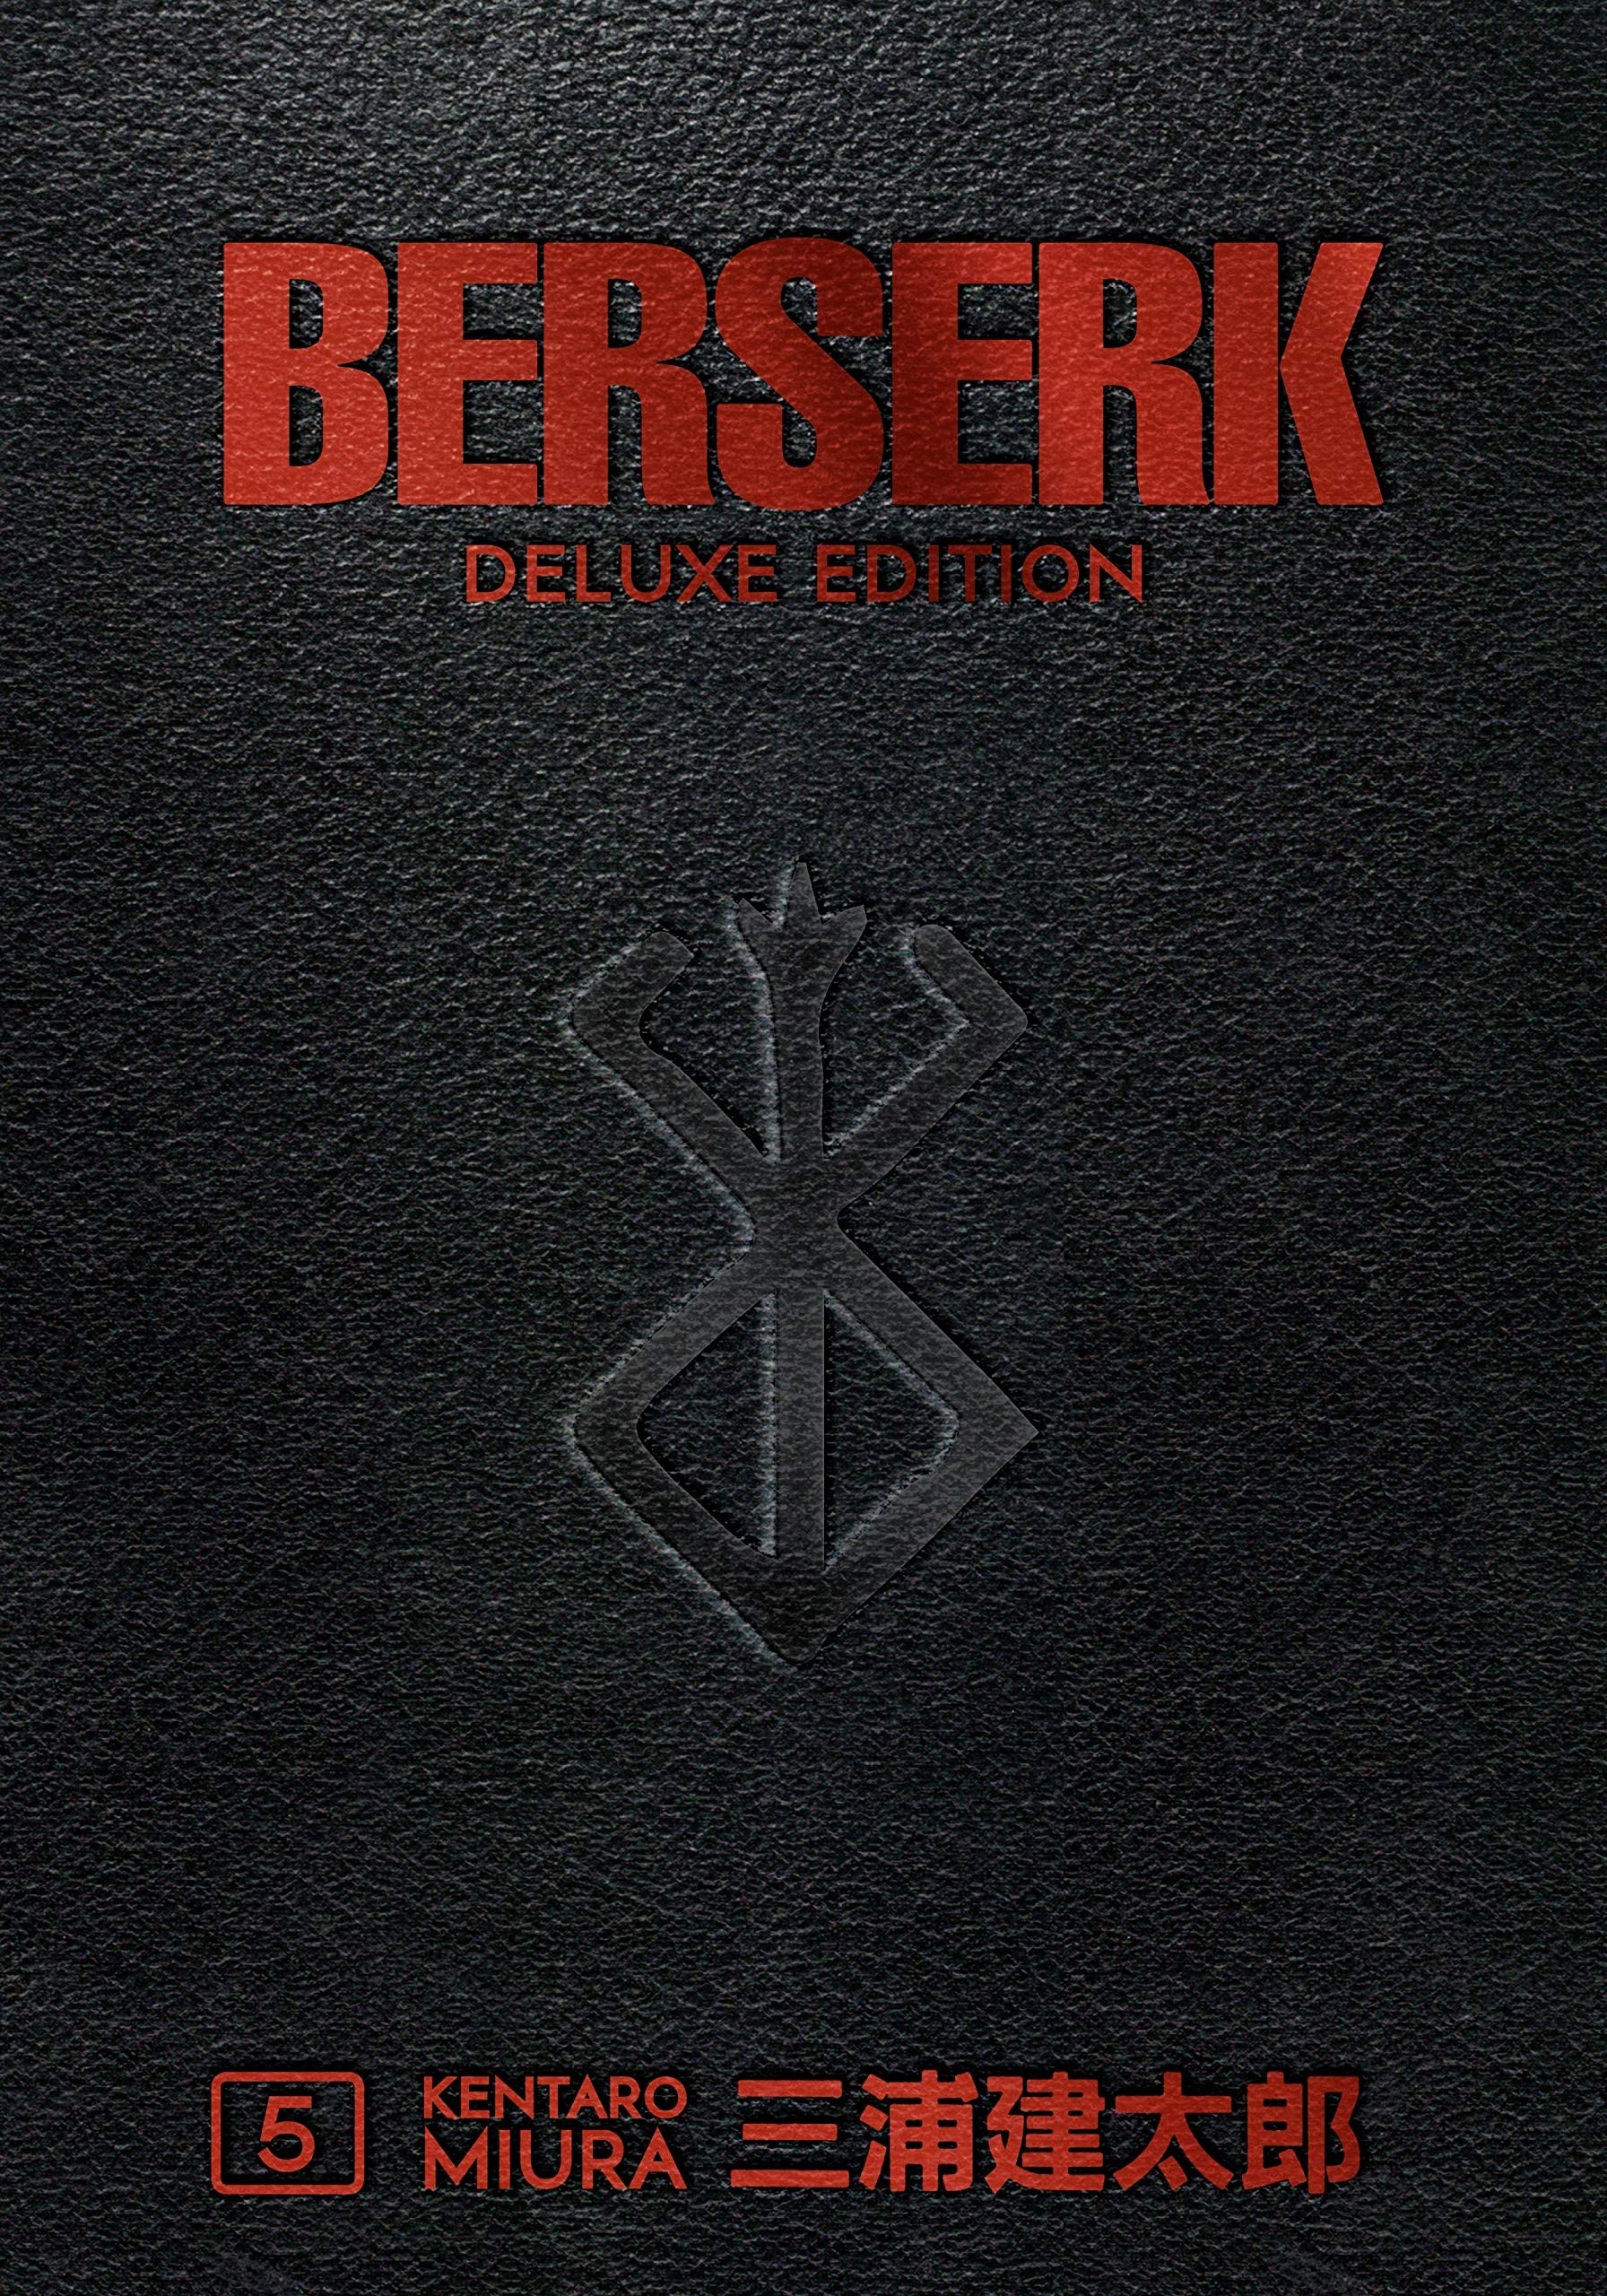 Berserk Deluxe, Vol. 05